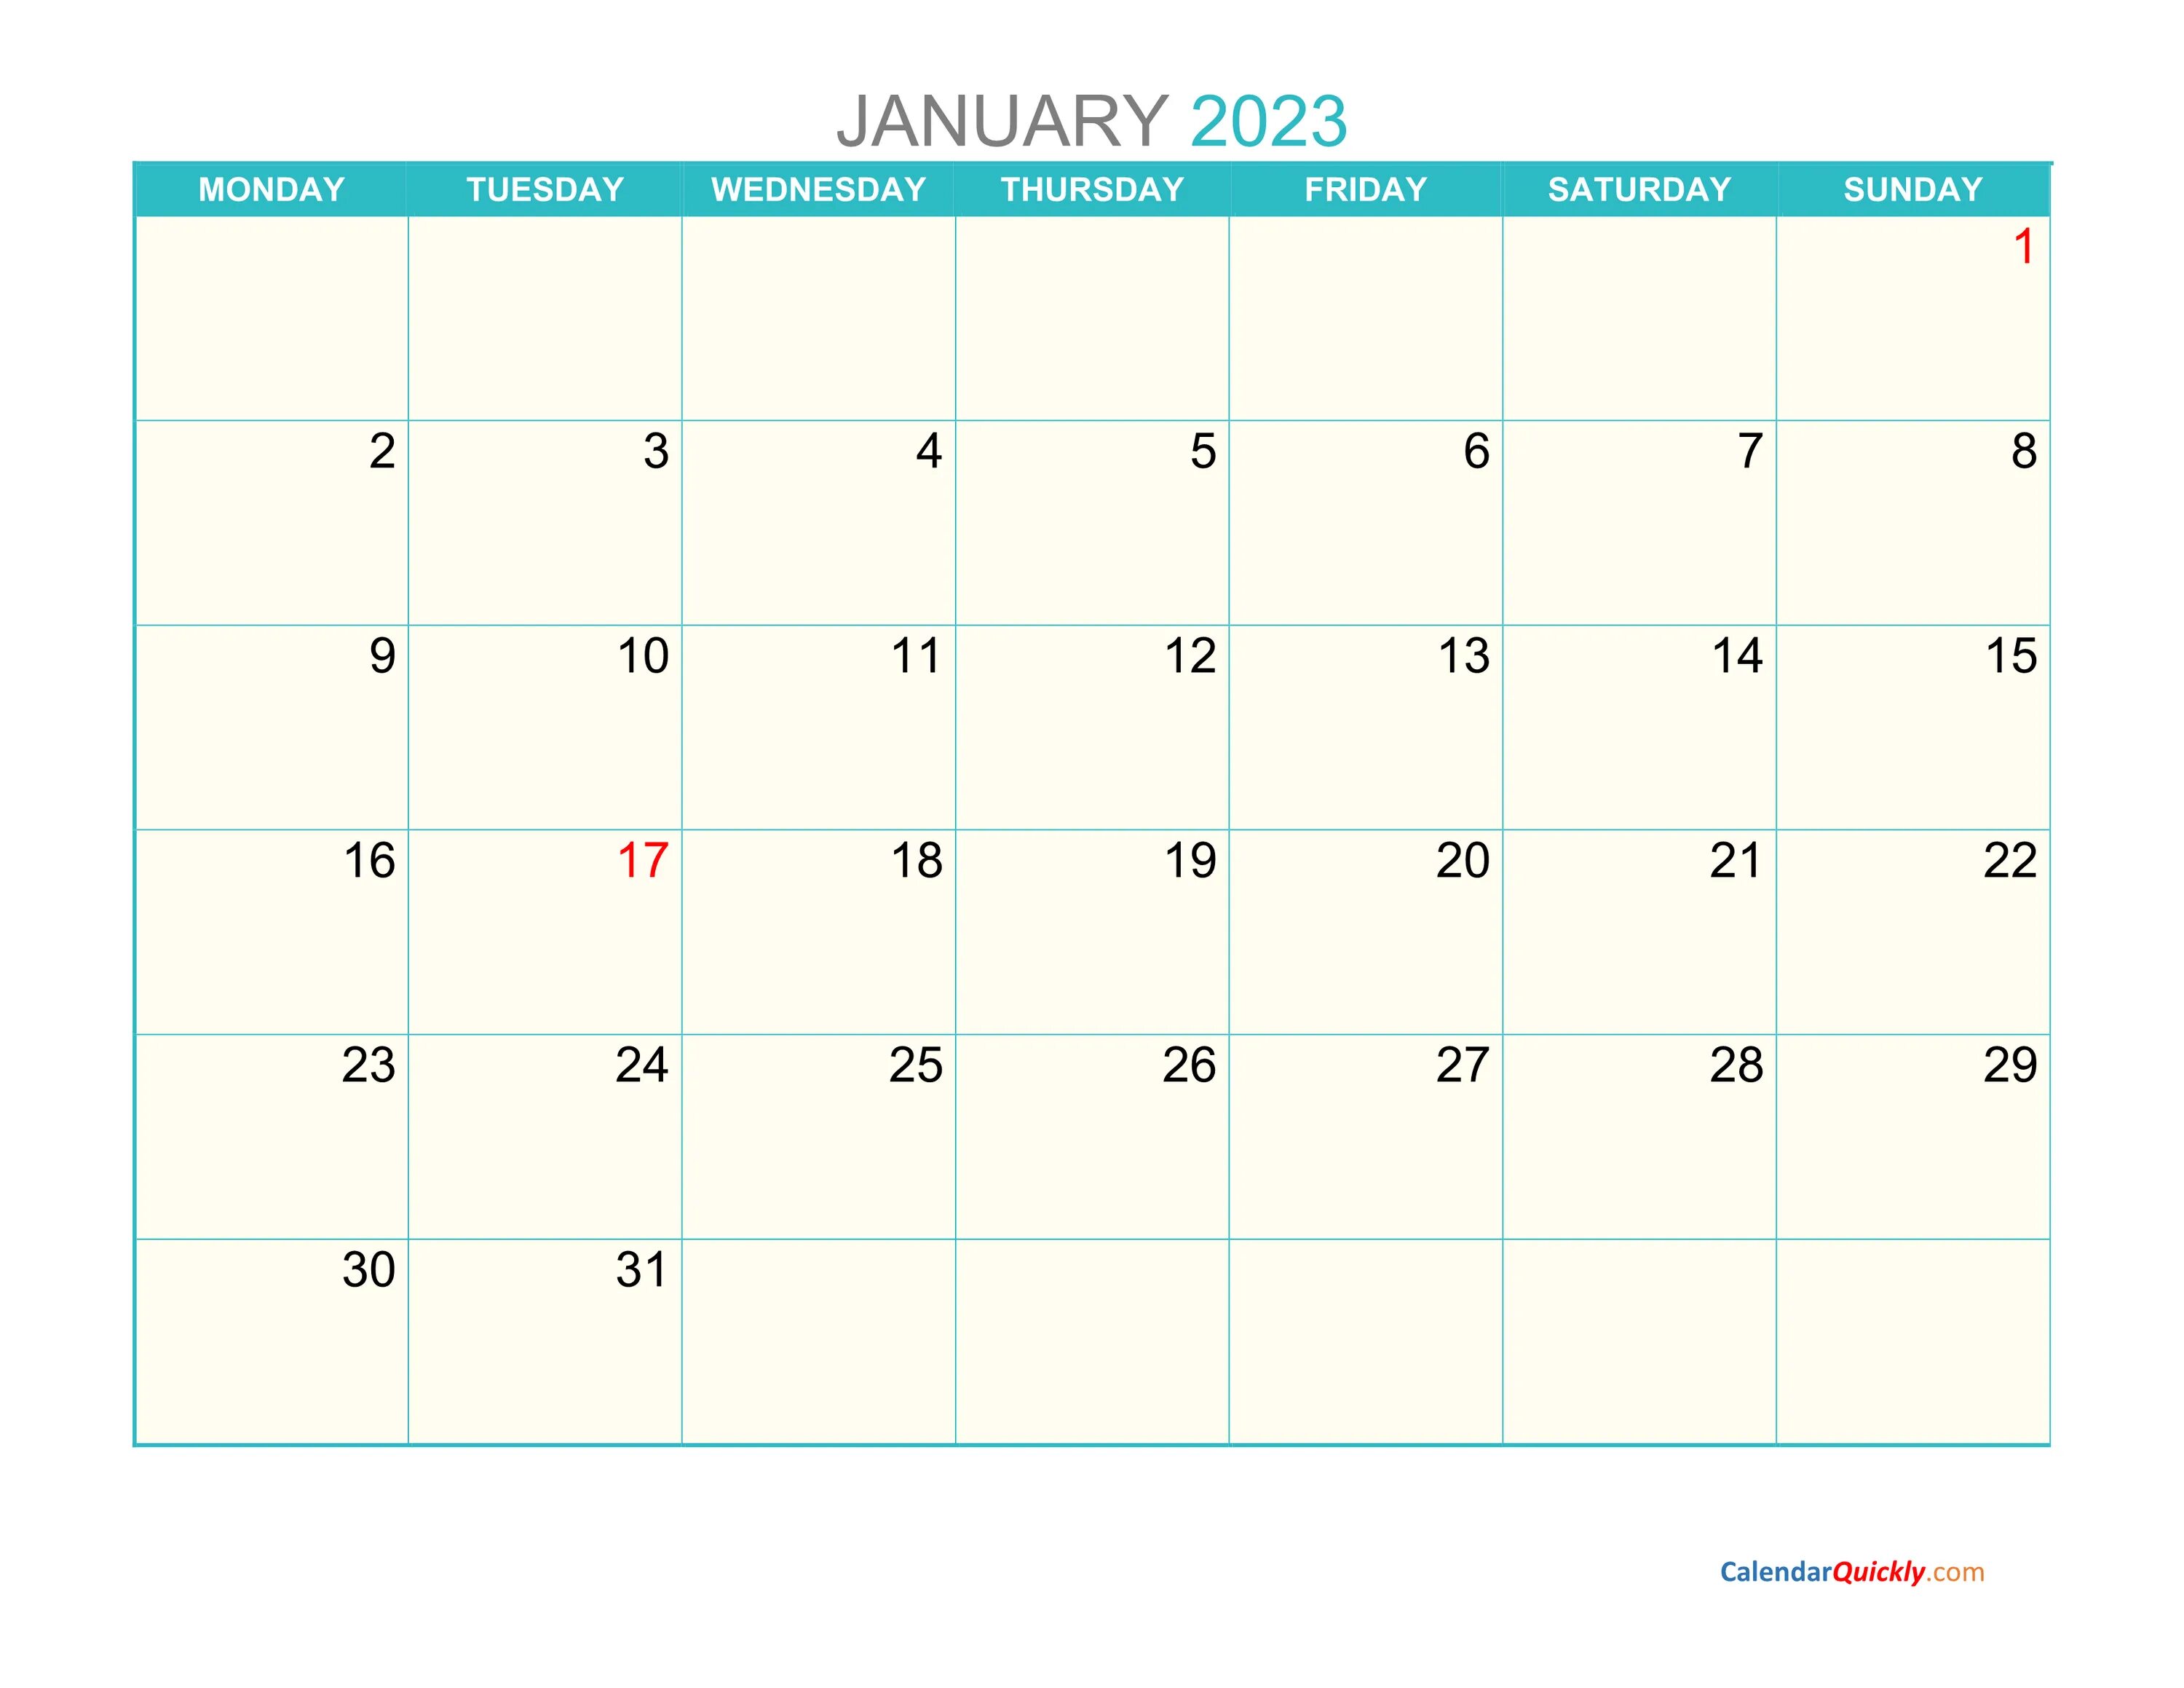 Мингли календарь март 2024. March April 2023. April 2023 календарь. Календарь March 2024. Календарь на март 2023 года.